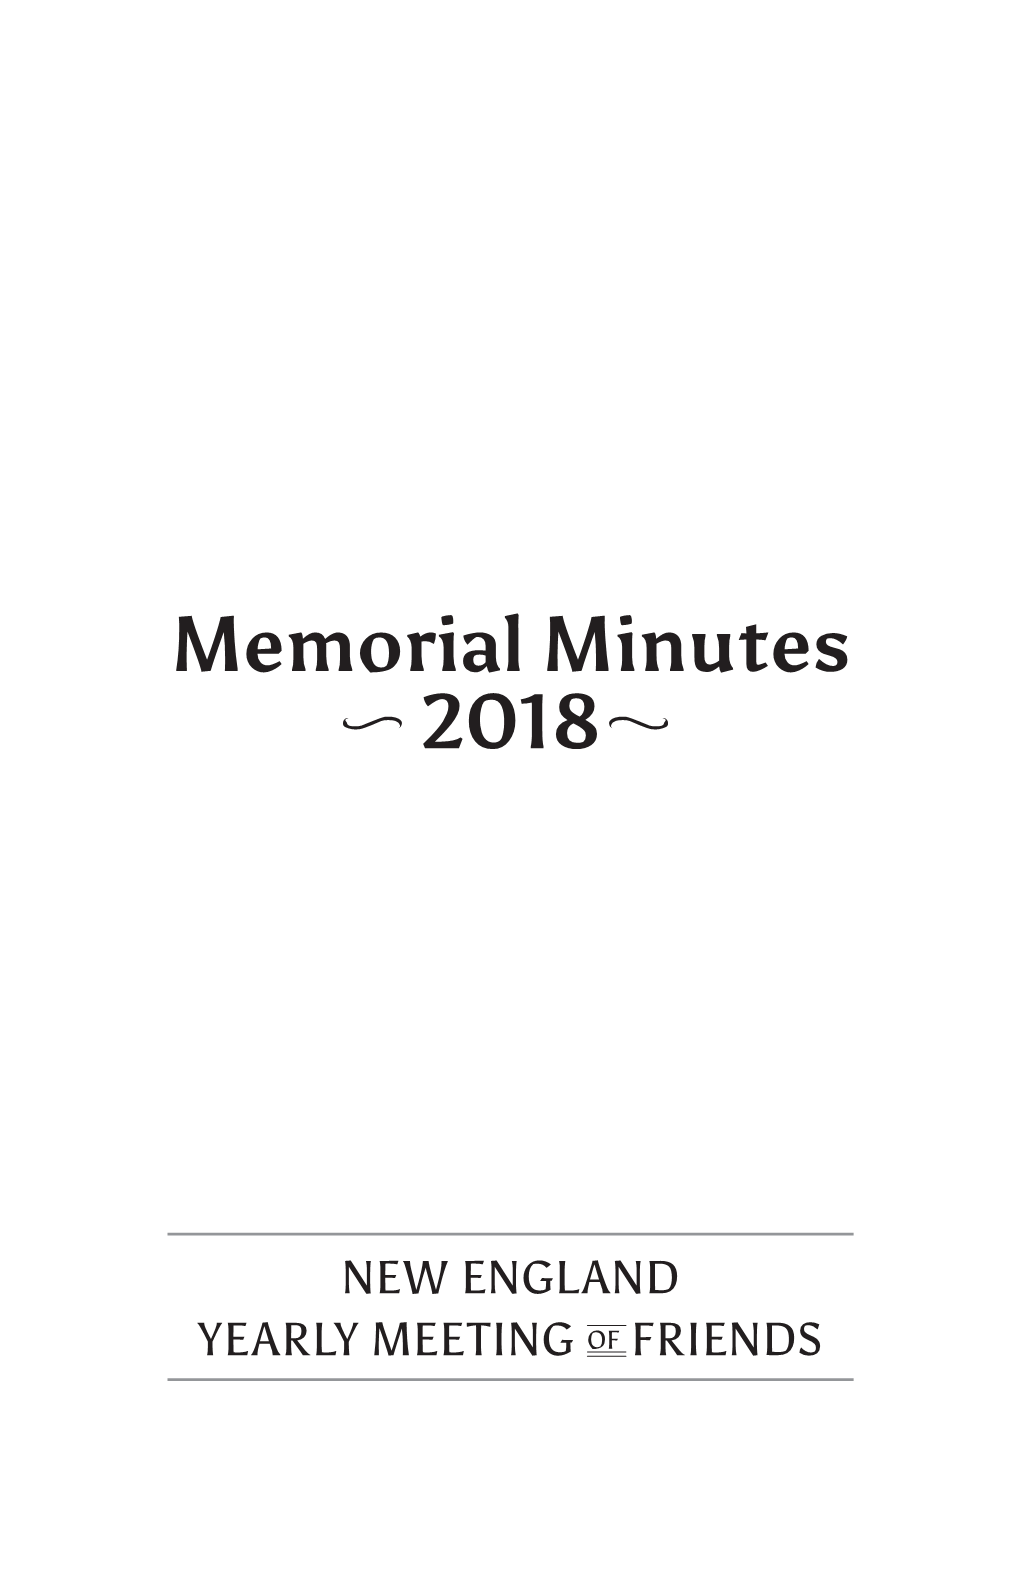 Memorial Minutes 2018